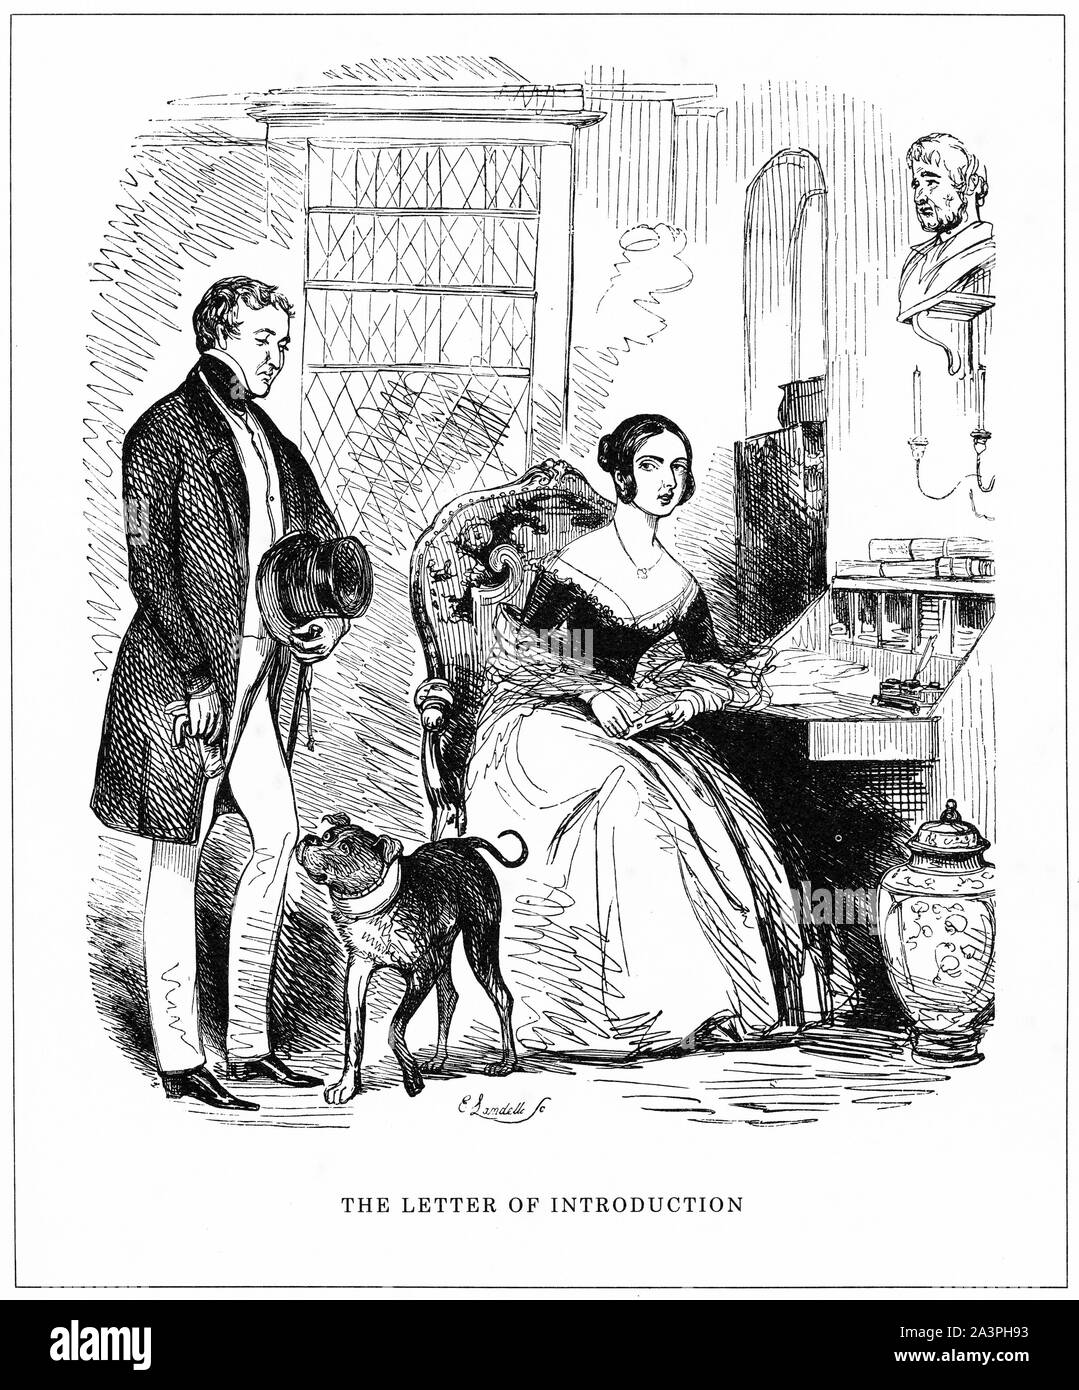 Gravure de la nouvelle Premier Ministre, Sir Robert Peel, en cours d'introduction à la jeune reine Victoria en 1841 pour qu'il puisse former son nouveau gouvernement. Du magazine Punch. Banque D'Images